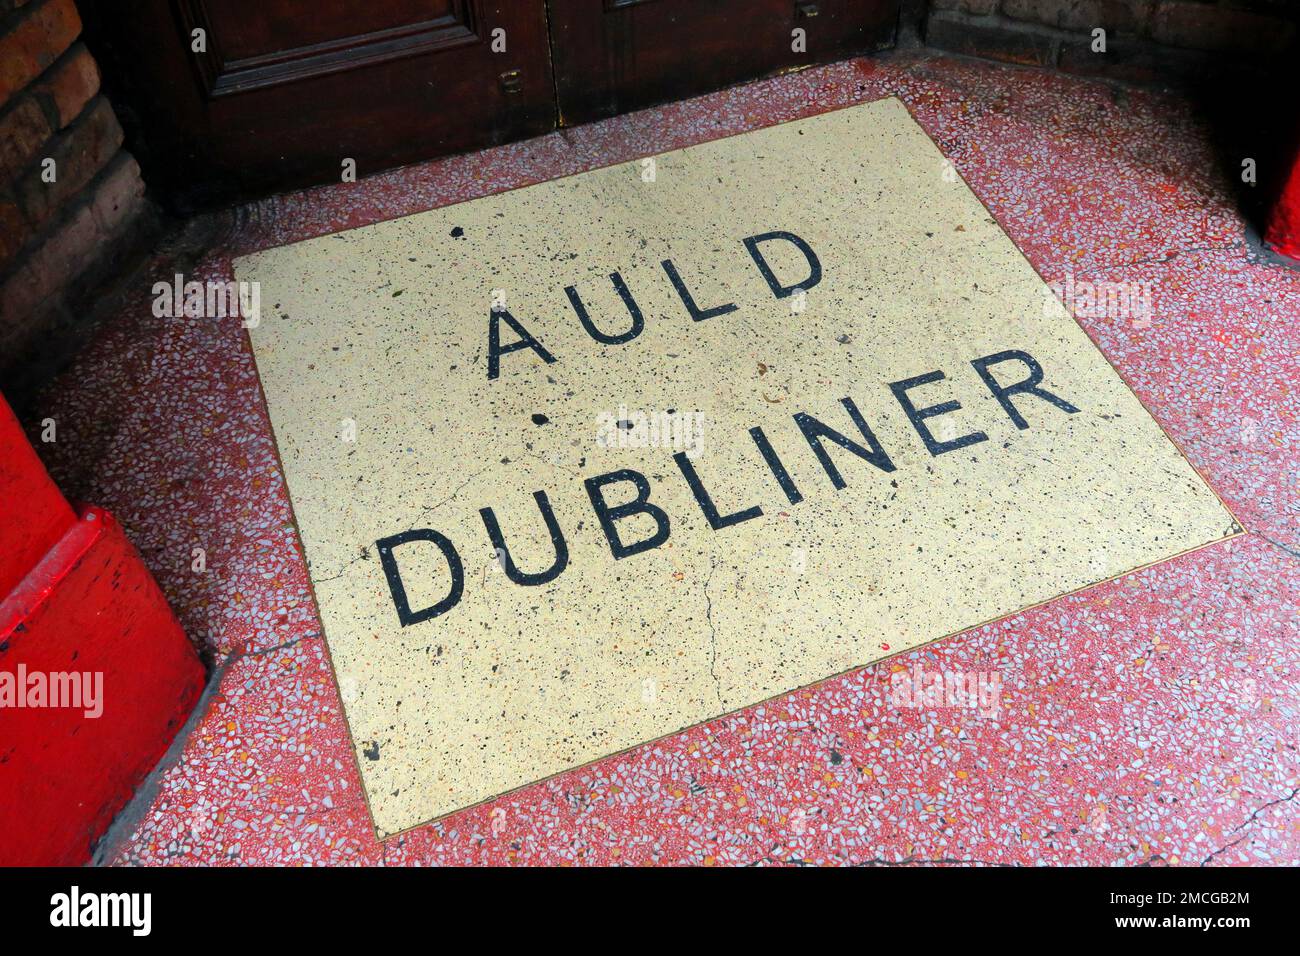 Pub traditionnel Auld Dubliner, 24 - 25 Temple Bar, Dublin, Irlande Banque D'Images